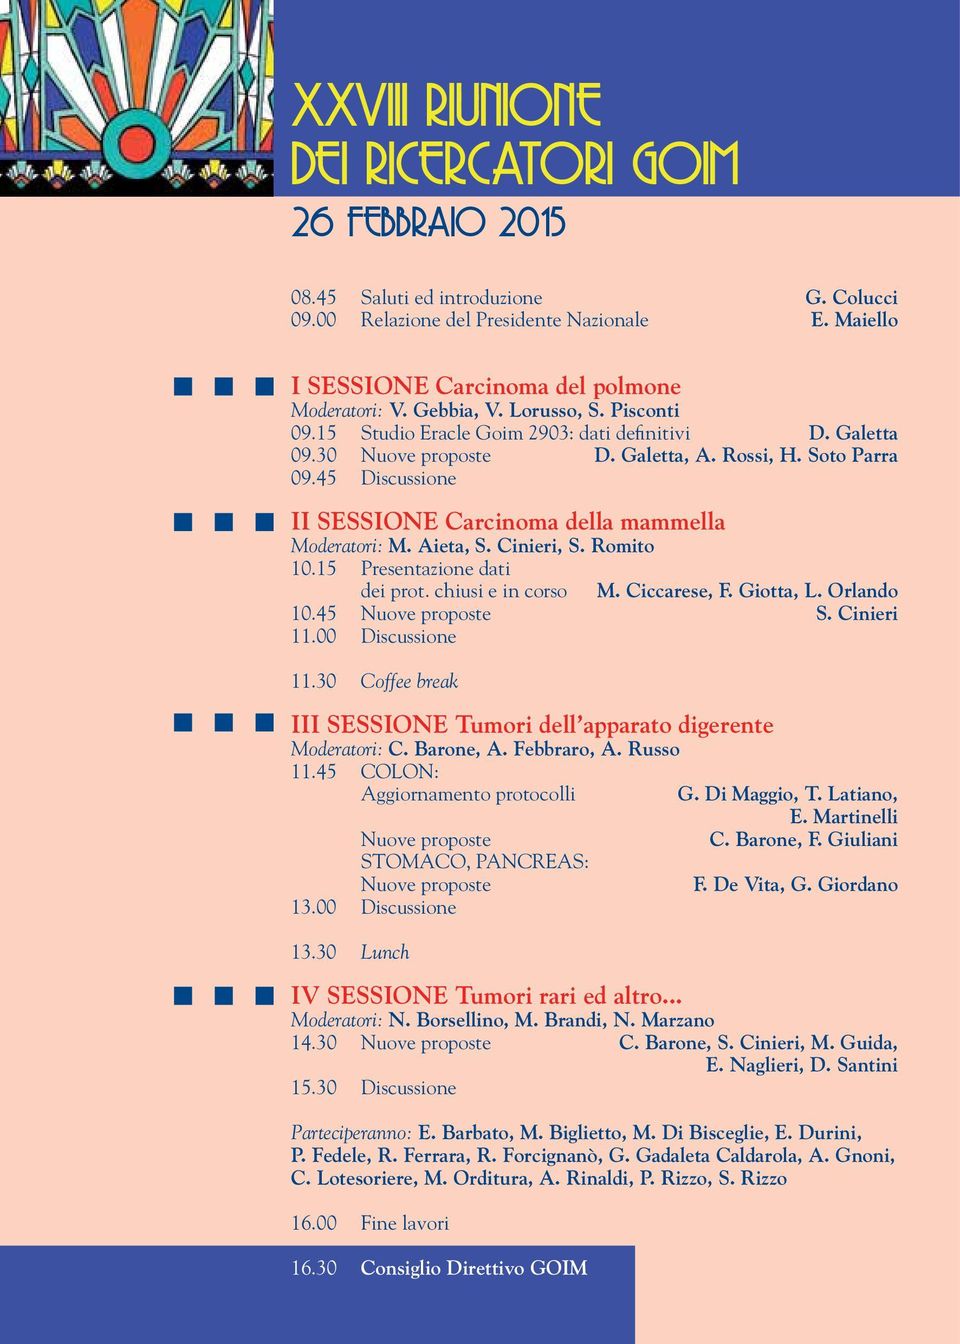 45 Discussione II SESSIONE Carcinoma della mammella Moderatori: M. Aieta, S. Cinieri, S. Romito 10.15 Presentazione dati dei prot. chiusi e in corso M. Ciccarese, F. Giotta, L. Orlando 10.